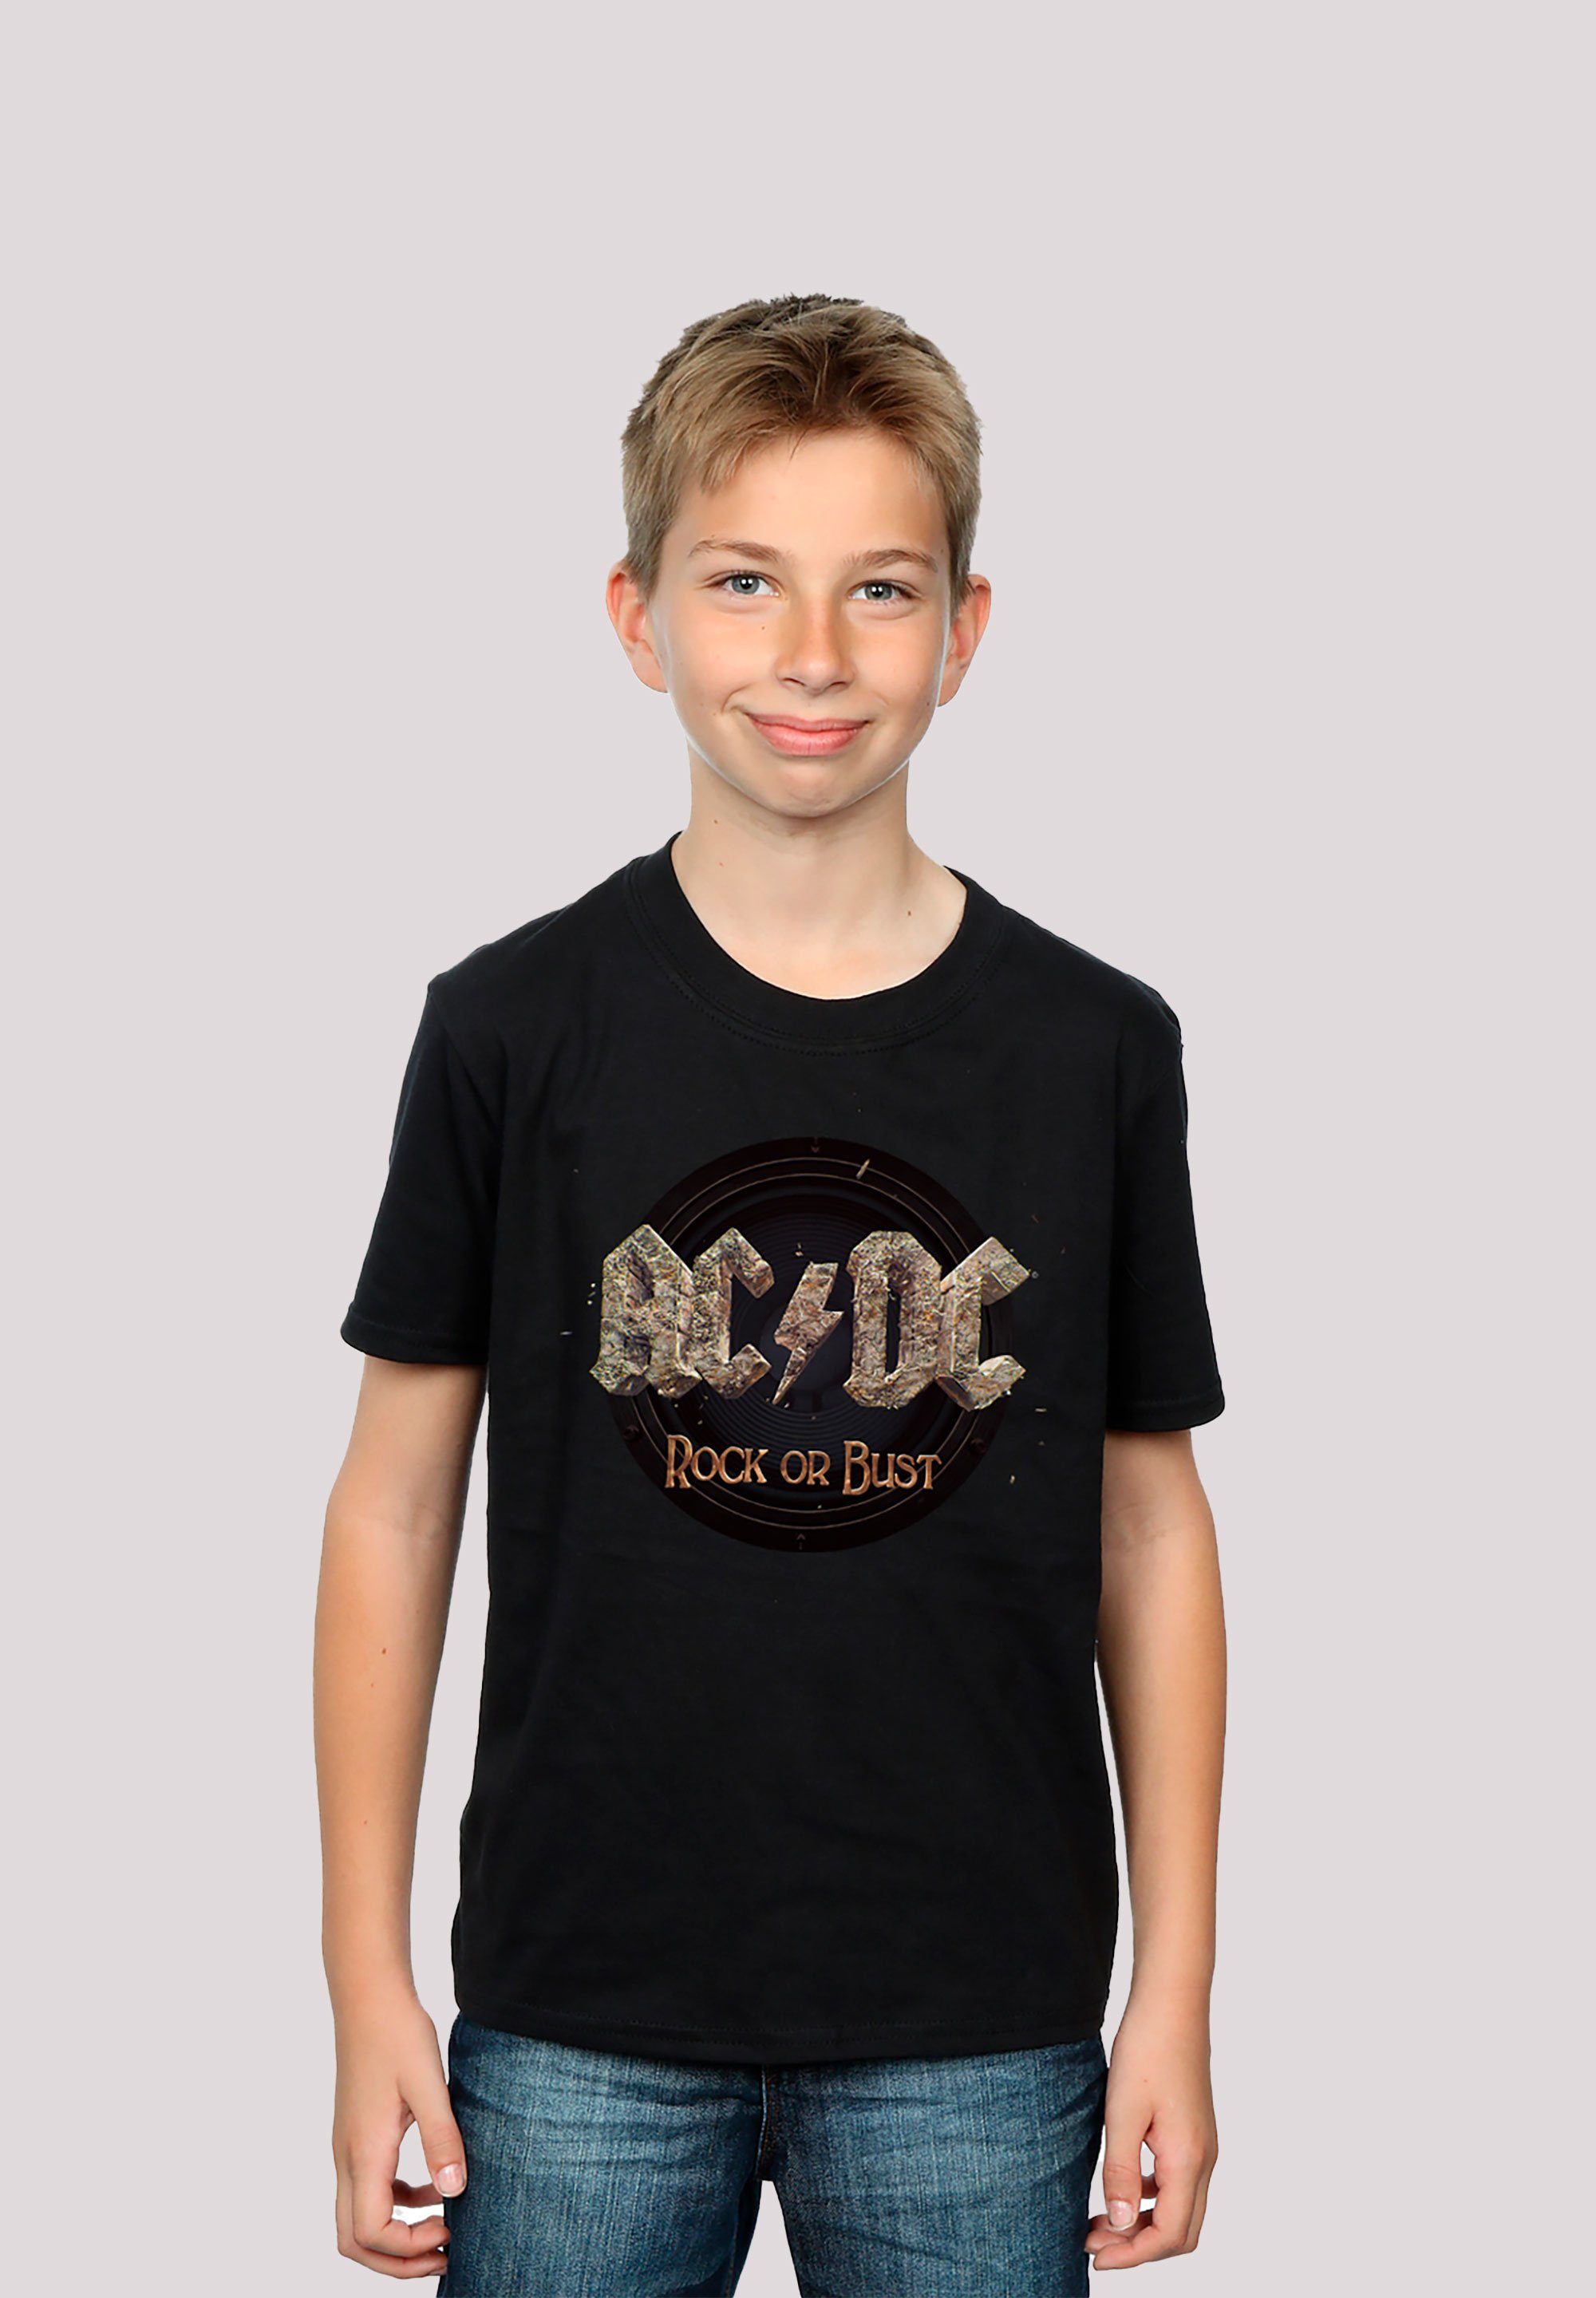 Bust T-Shirt Rock F4NT4STIC Print or für Herren Kinder & ACDC